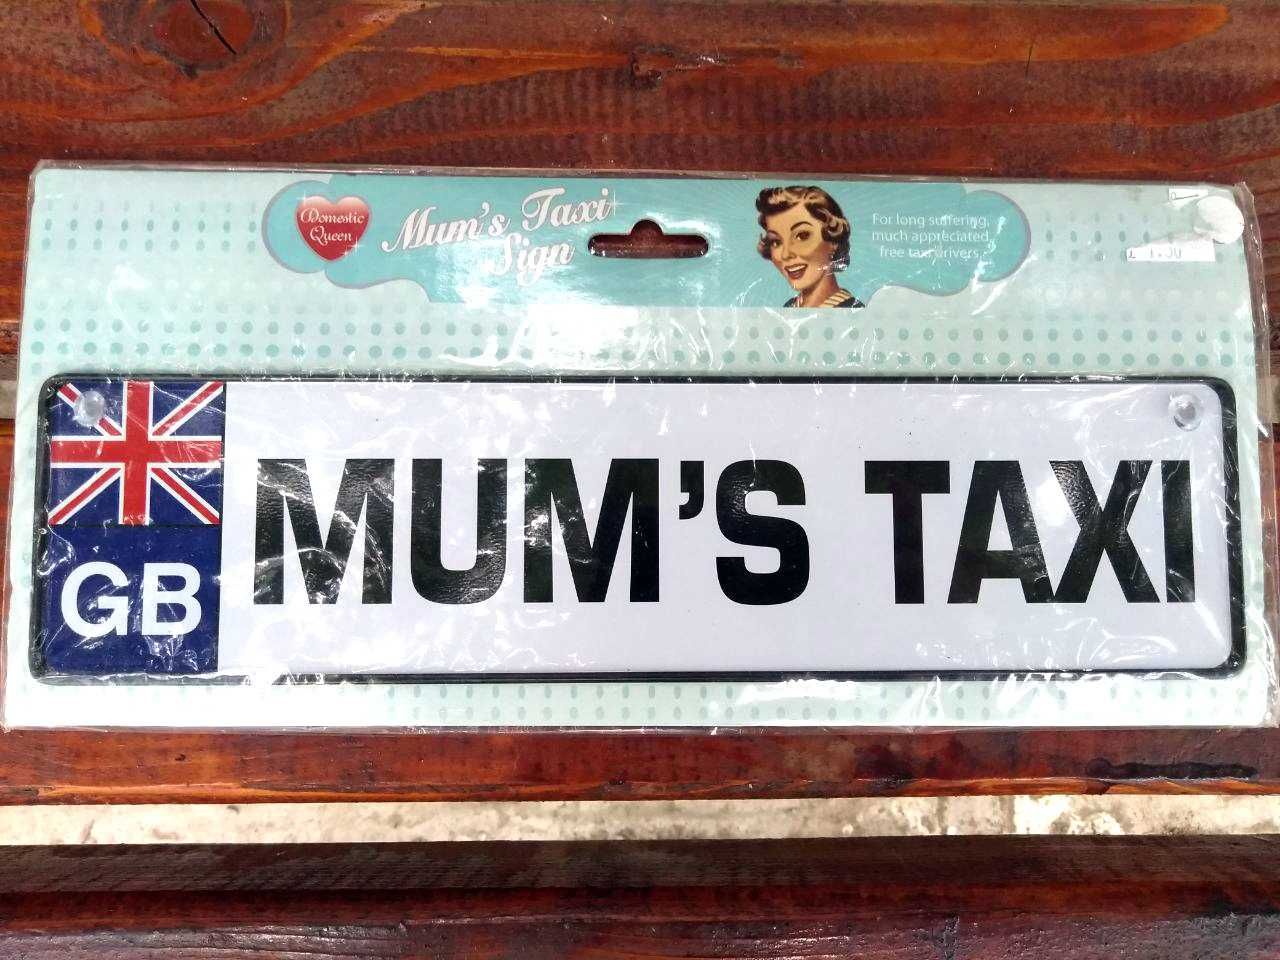 Сувенирный номер "Mum's Taxi" (Мамочкино такси)